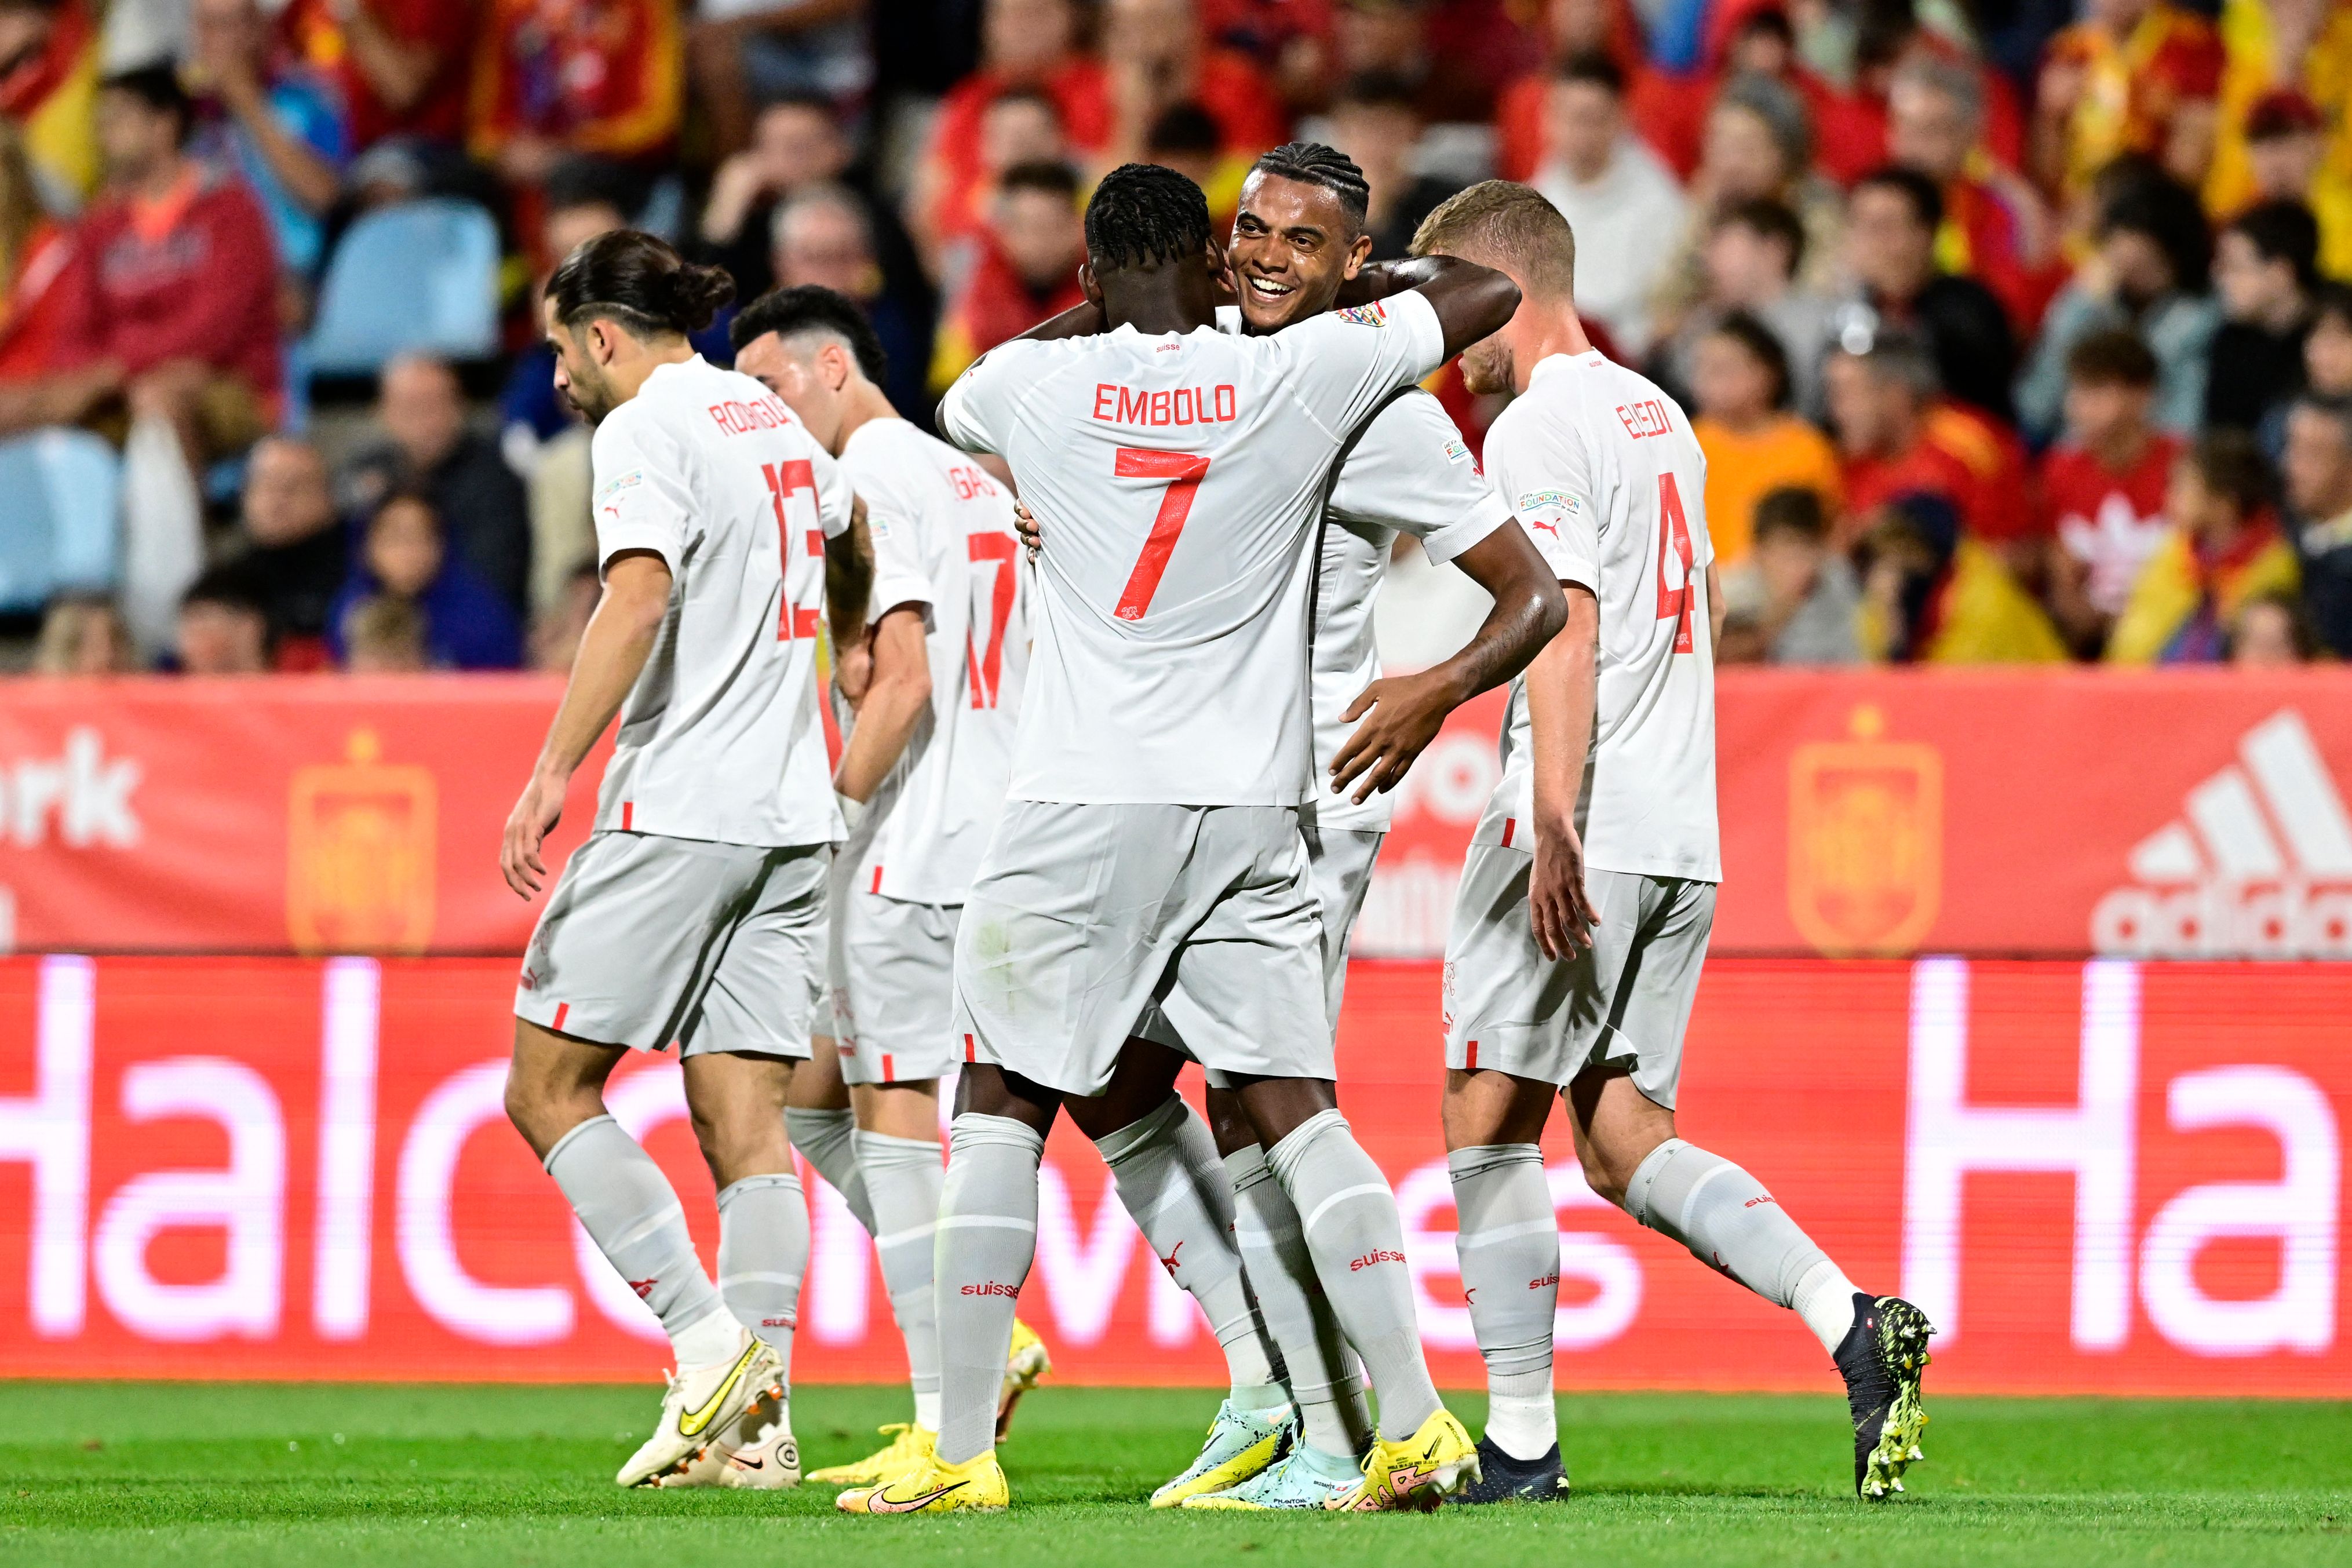 UEFA Uluslar Ligi 2022'NİN ÖNE ÇIKANLARI: ESP 1-2 SUI, Breel Embolo'nun galibi İspanya'nın zirveye çıkma umutlarını batırdı, son çatışmaya geldi-İspanya-İsviçre'yi CANLI olarak kontrol edin-ÖNE ÇIKANLAR